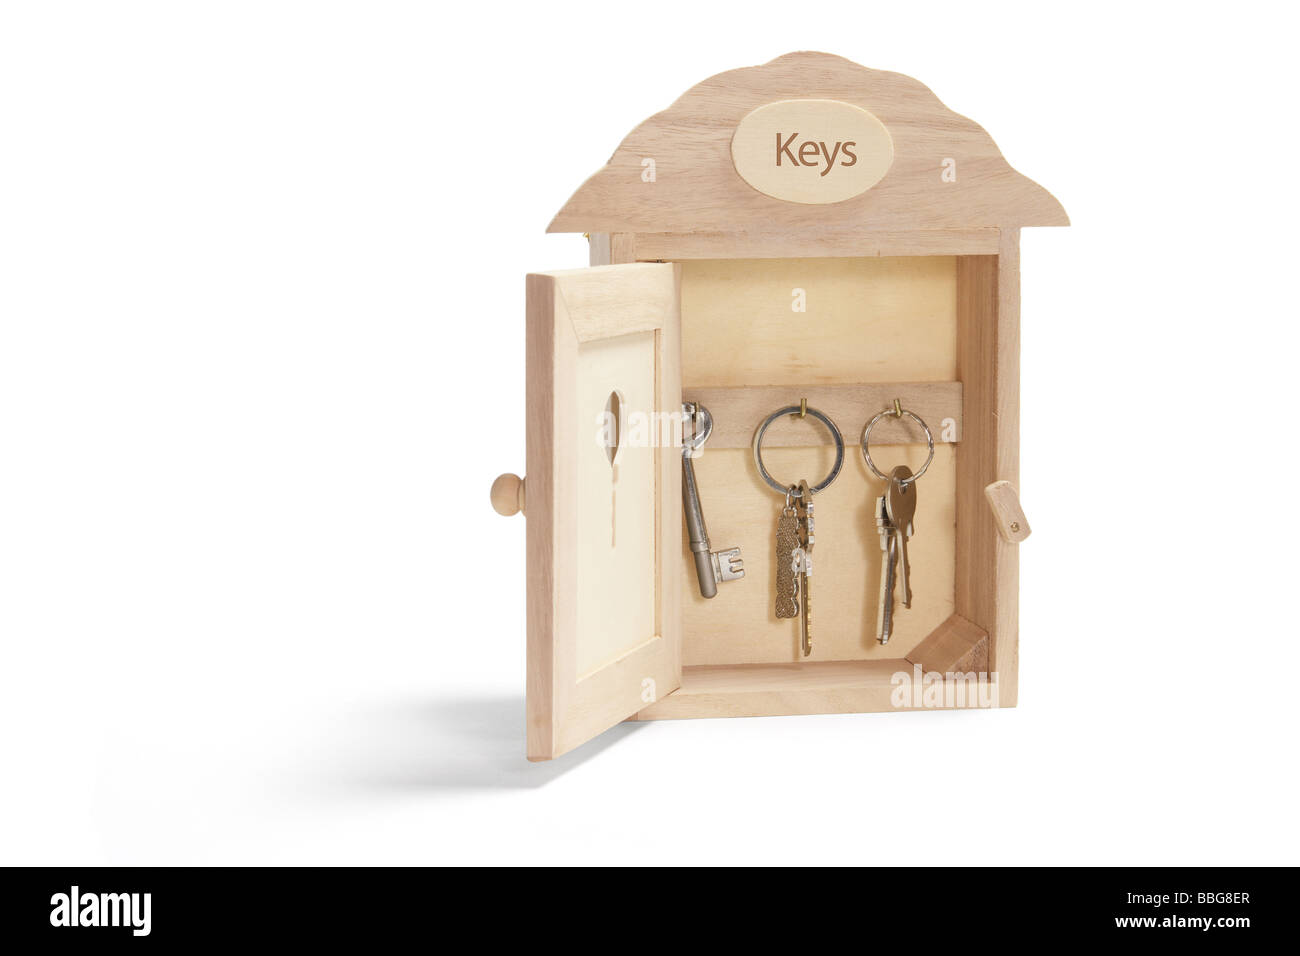 Caja de seguridad para llaves, caja de seguridad para llave de casa, caja  de seguridad con combinación para bienes raíces, llaves de automóvil, caja